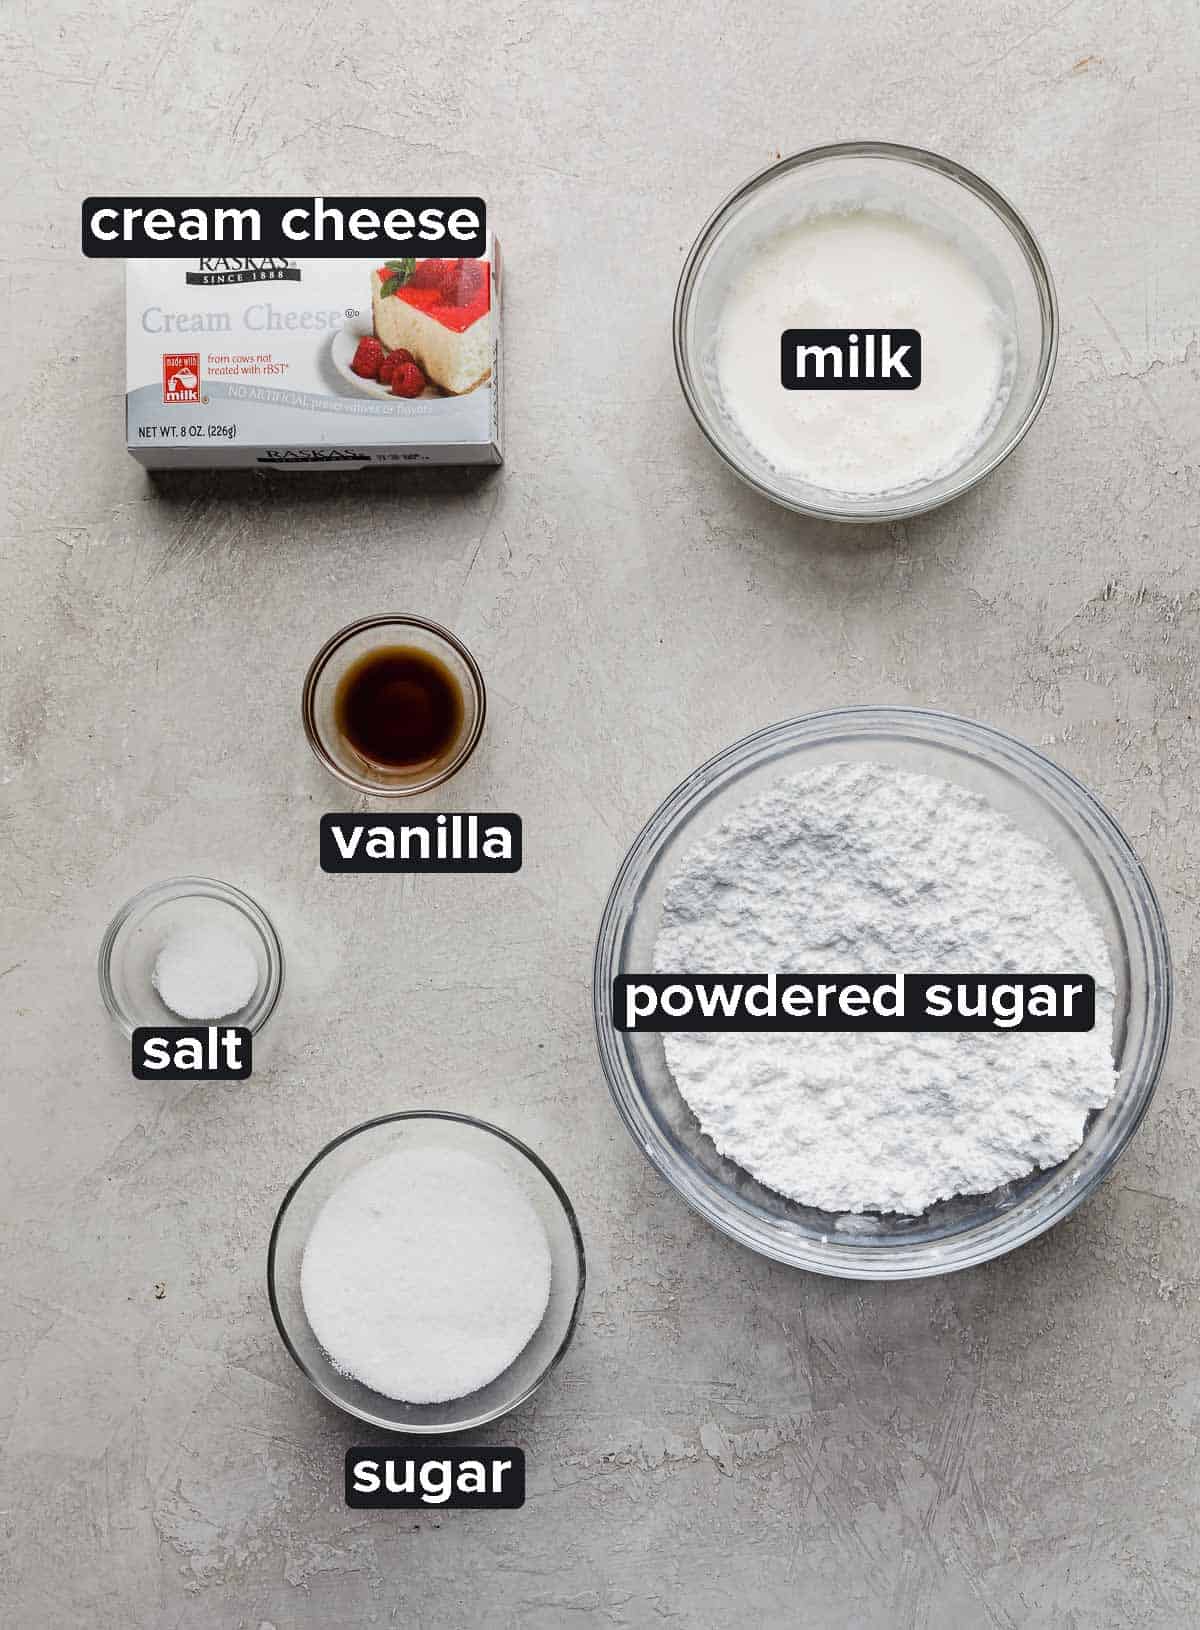 Red Velvet Waffles cream cheese glaze ingredients on a gray background: cream cheese, milk, vanilla, salt, sugar, and powdered sugar.